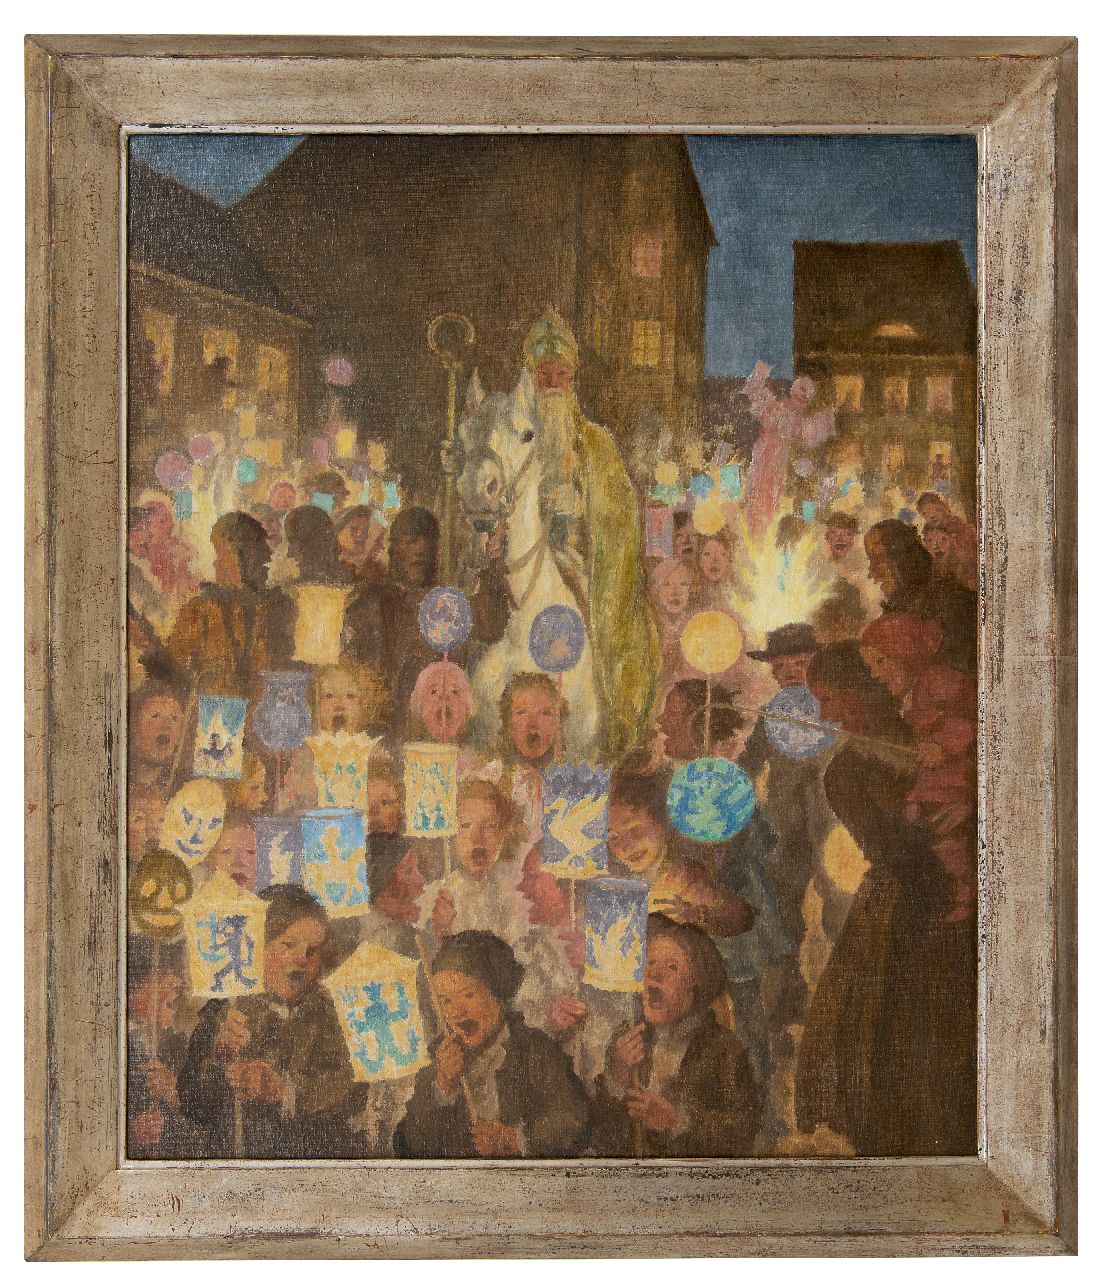 Münzer A.F.T.  | Adolph Franz Theodor 'Adolf' Münzer | Schilderijen te koop aangeboden | Sint-Maarten optocht 1934, olieverf op doek 80,8 x 66,0 cm, gesigneerd verso en verso gedateerd 1934